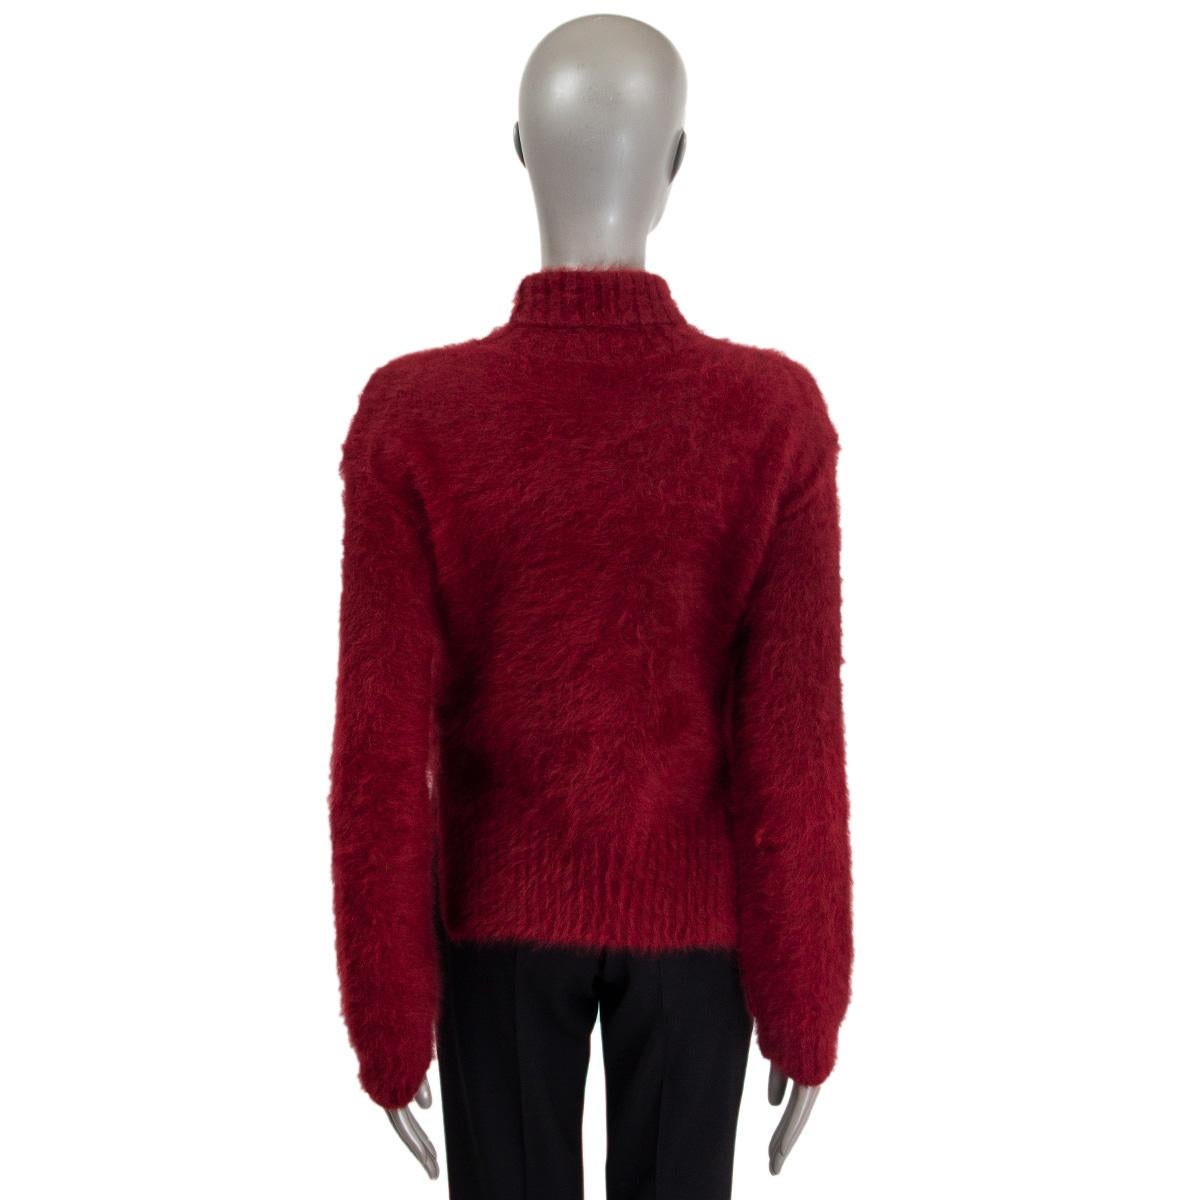 red angora sweater